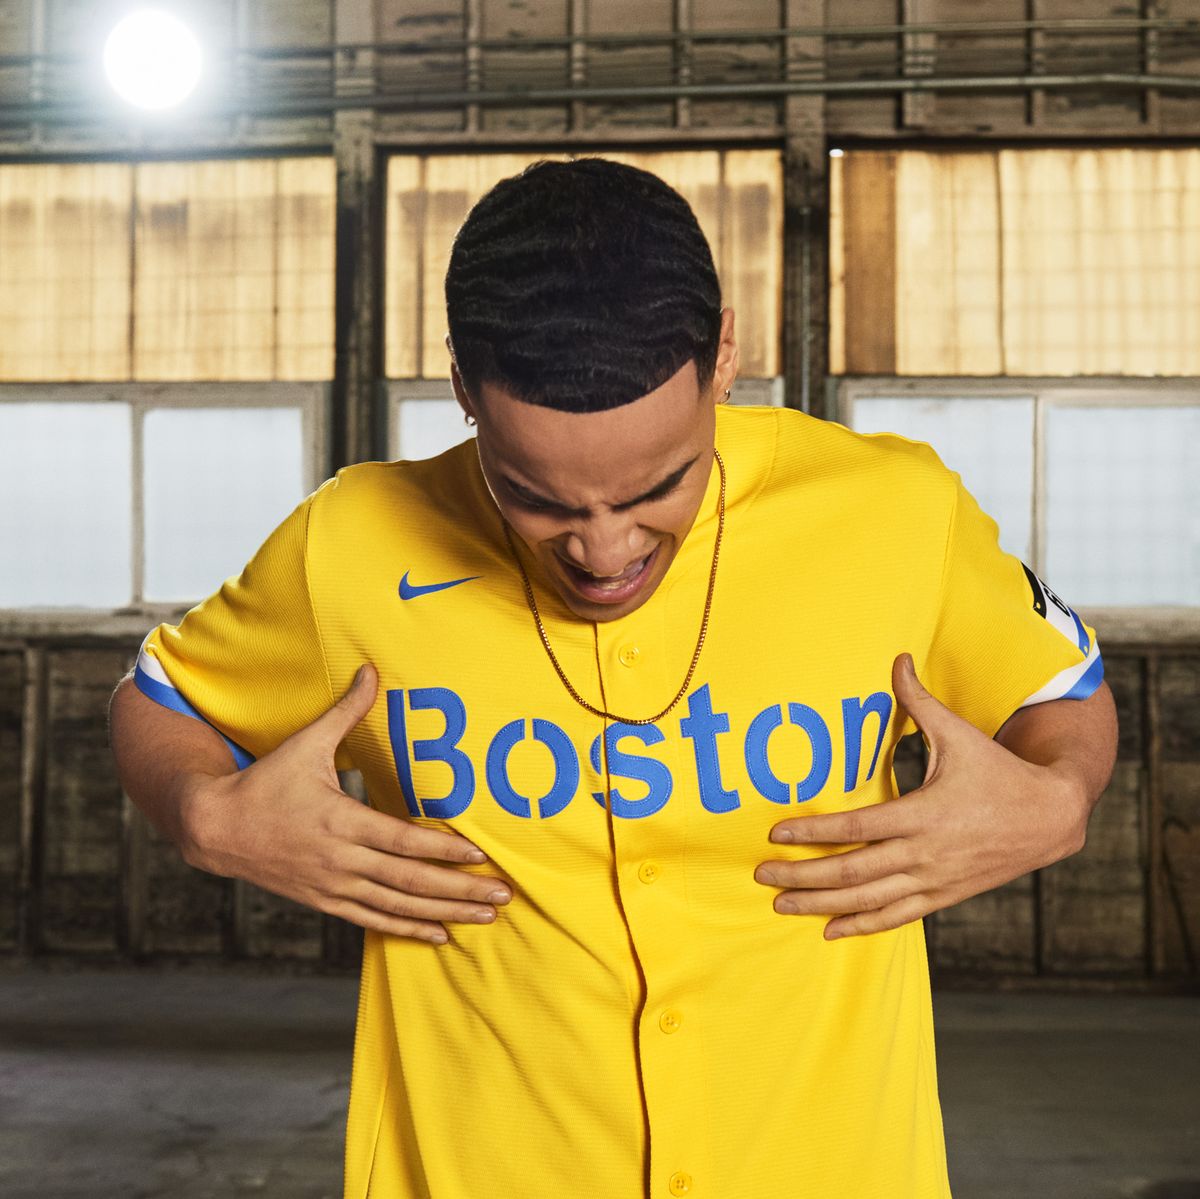 Themed Jersey - Boston Red Sox Nike Jersey - legit nike sb size women pants  cheap for boys - Nike Designs Boston Marathon